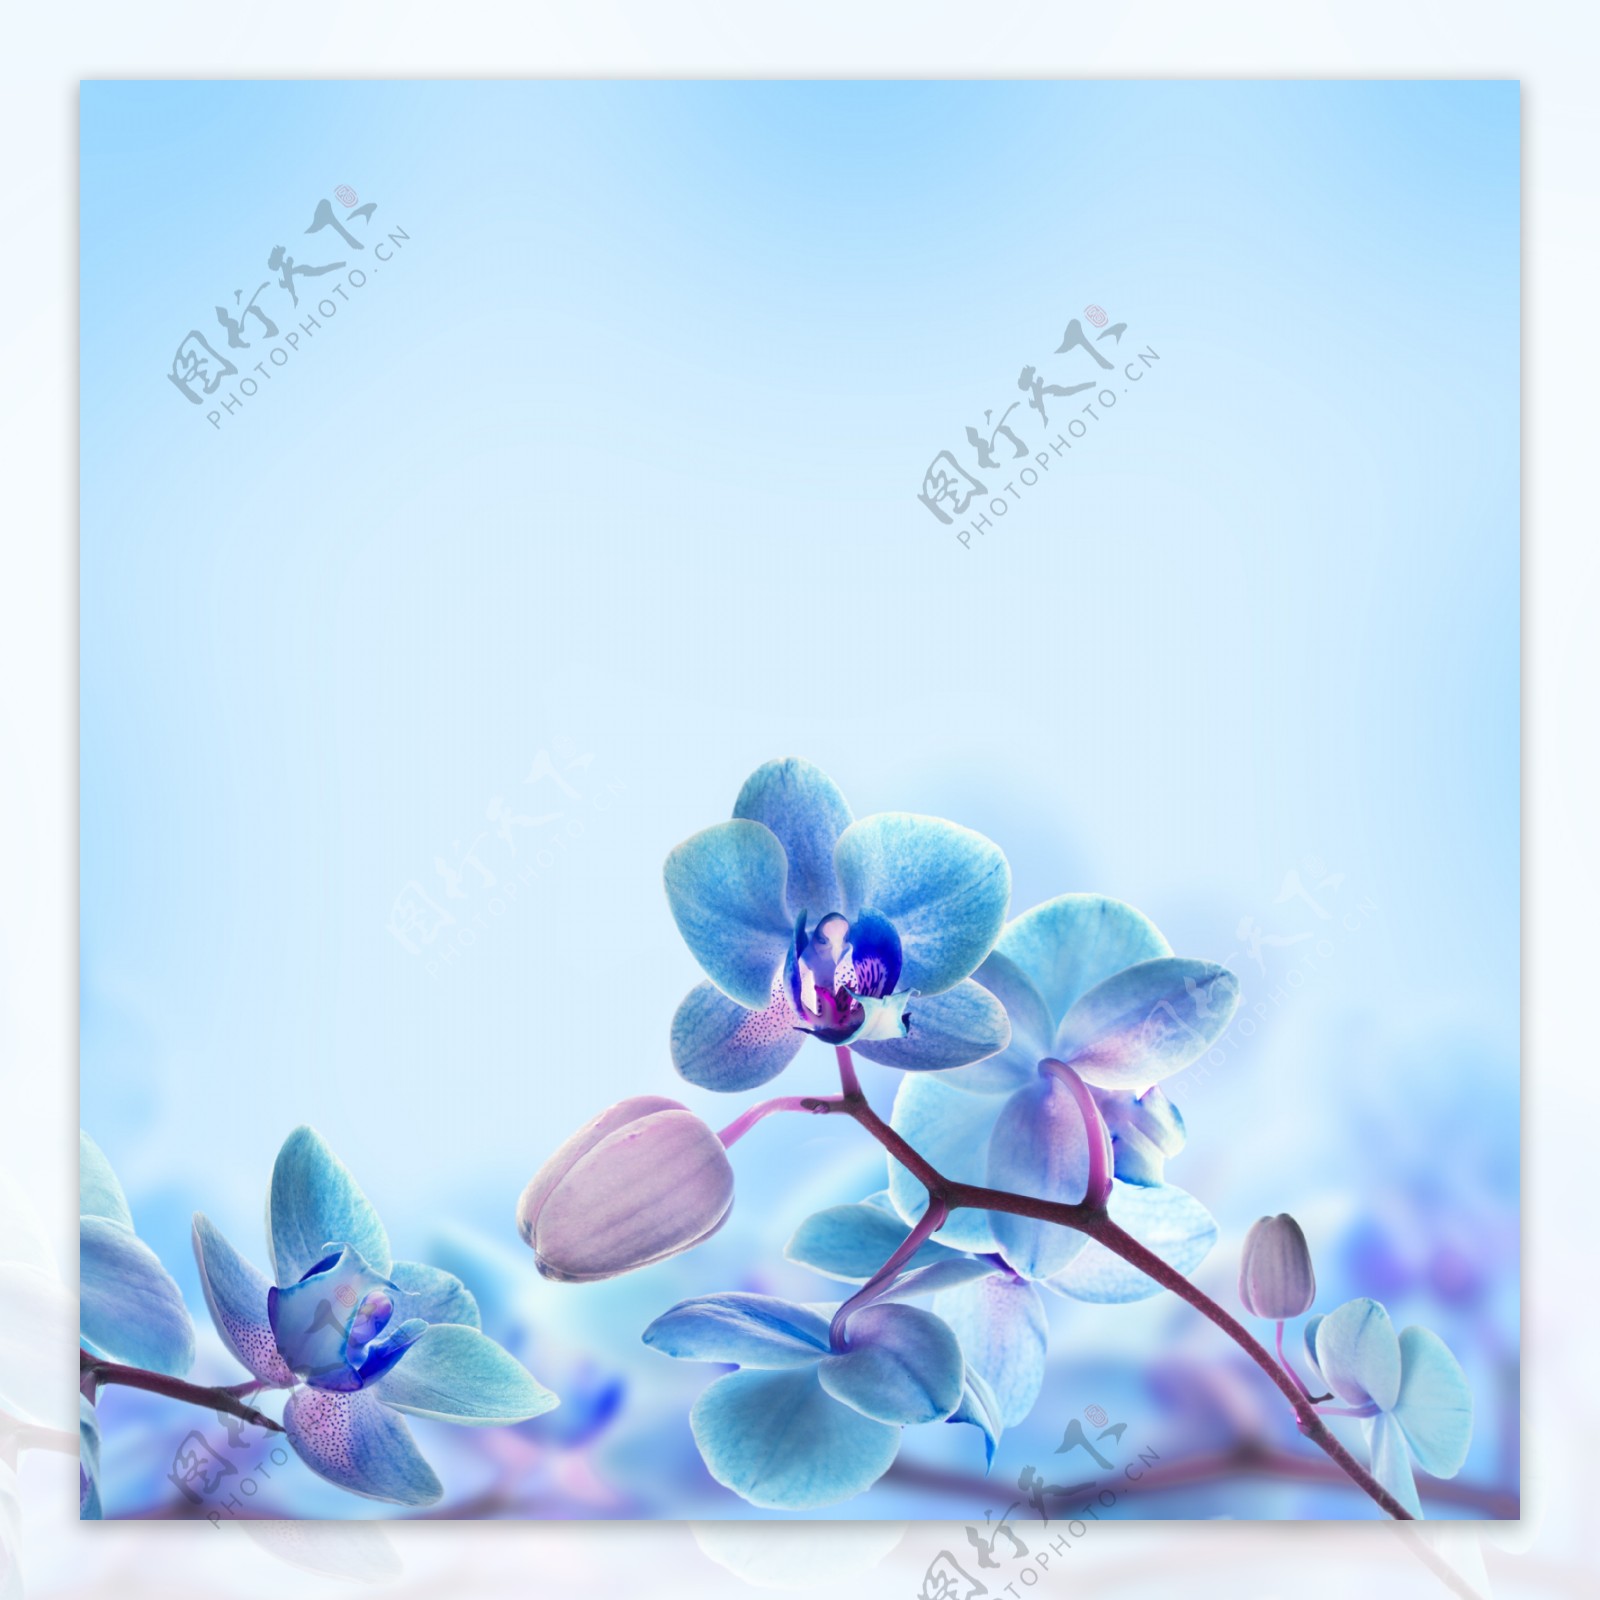 高清蓝色花朵图案背景jpg素